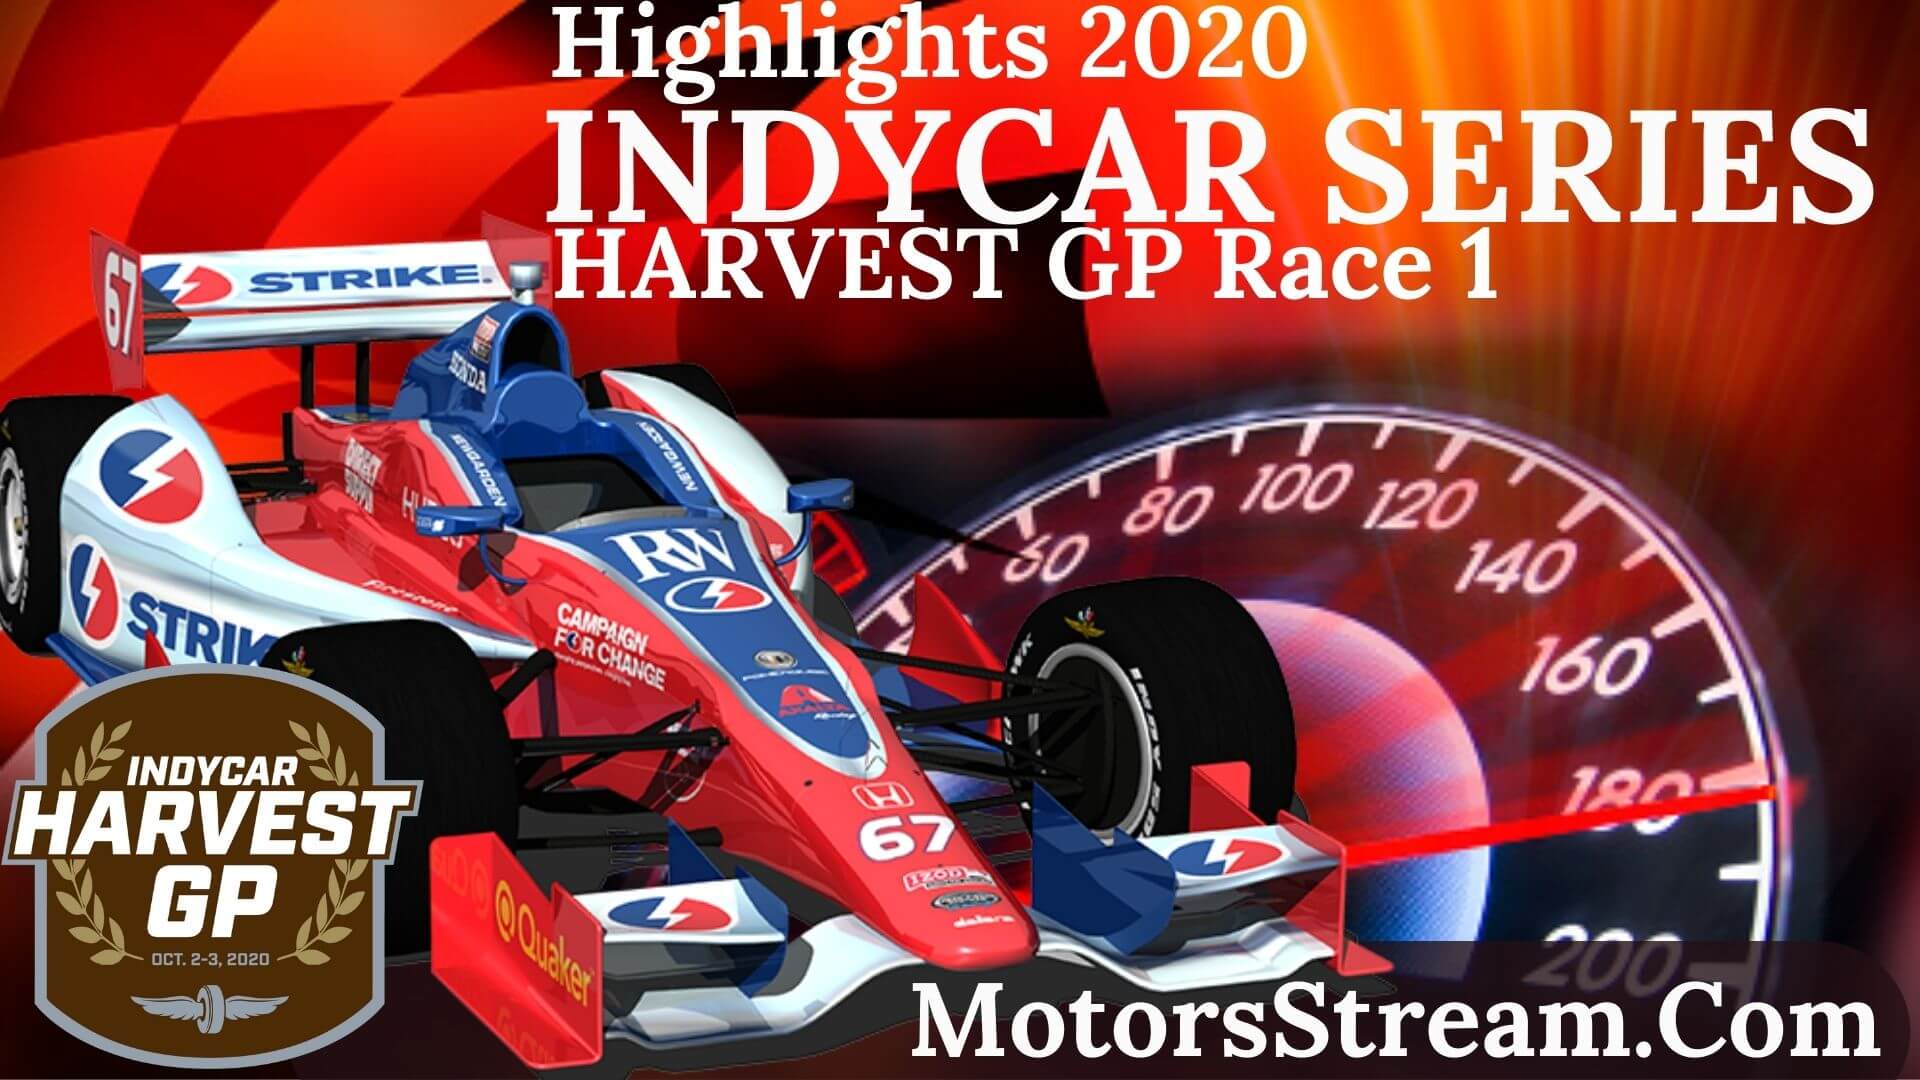 INDYCAR Harvest GP Race 1 Highlights 2020